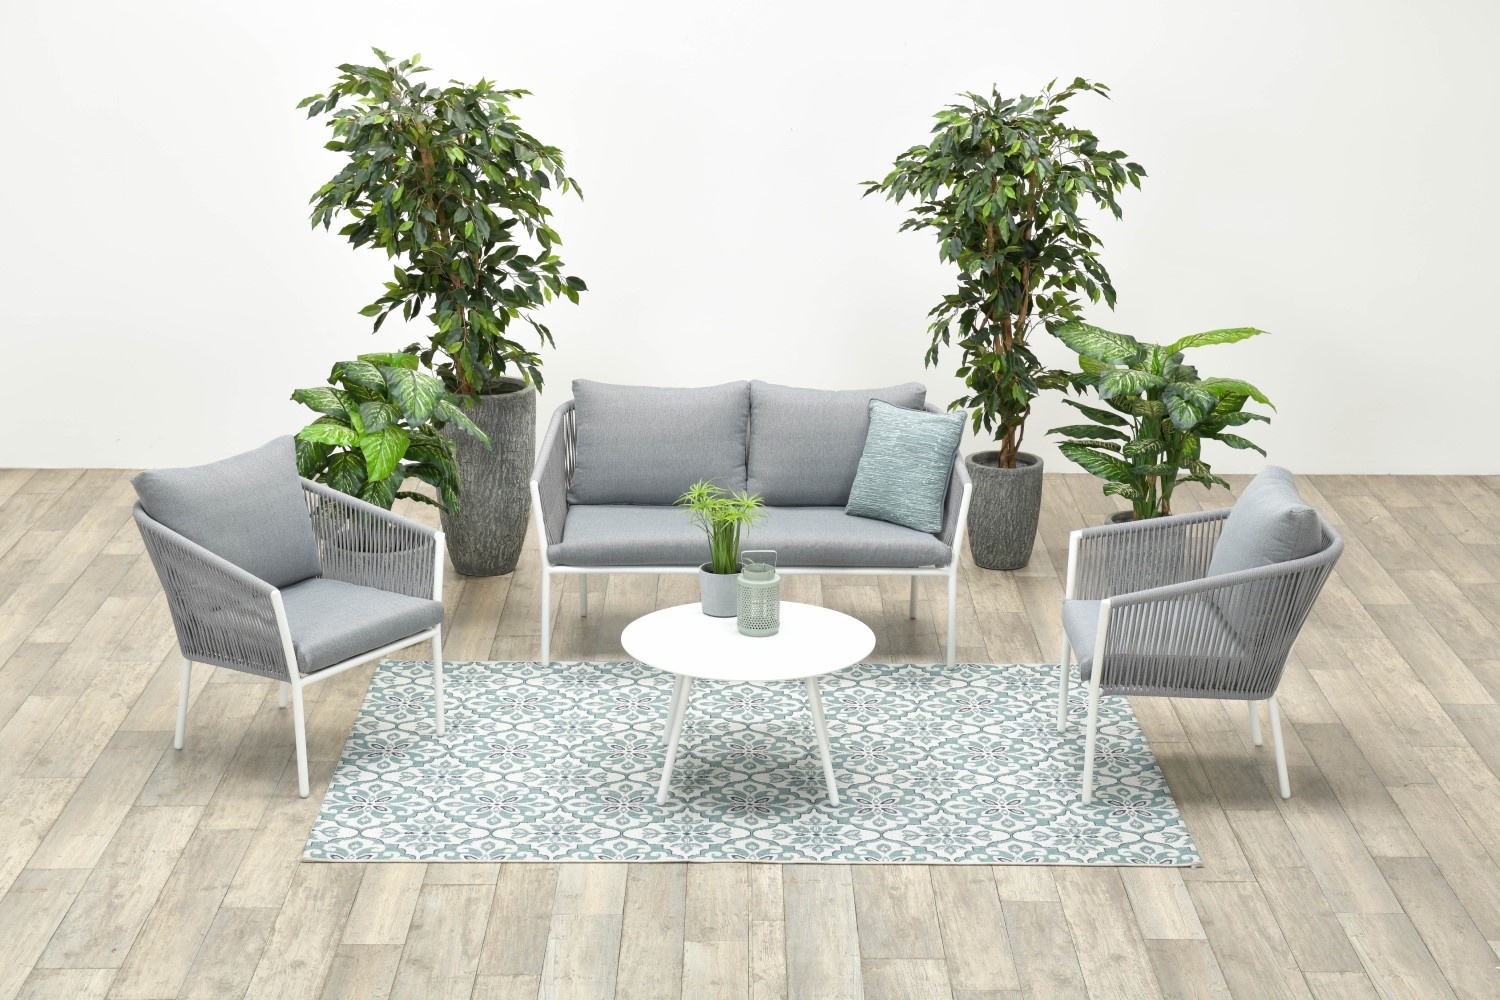 Garden Impressions Aluminium-Rope Lounge-Set "Madone" inkl. Sofa, Sesseln, Tisch und Kissen,weiß / hellgrau,